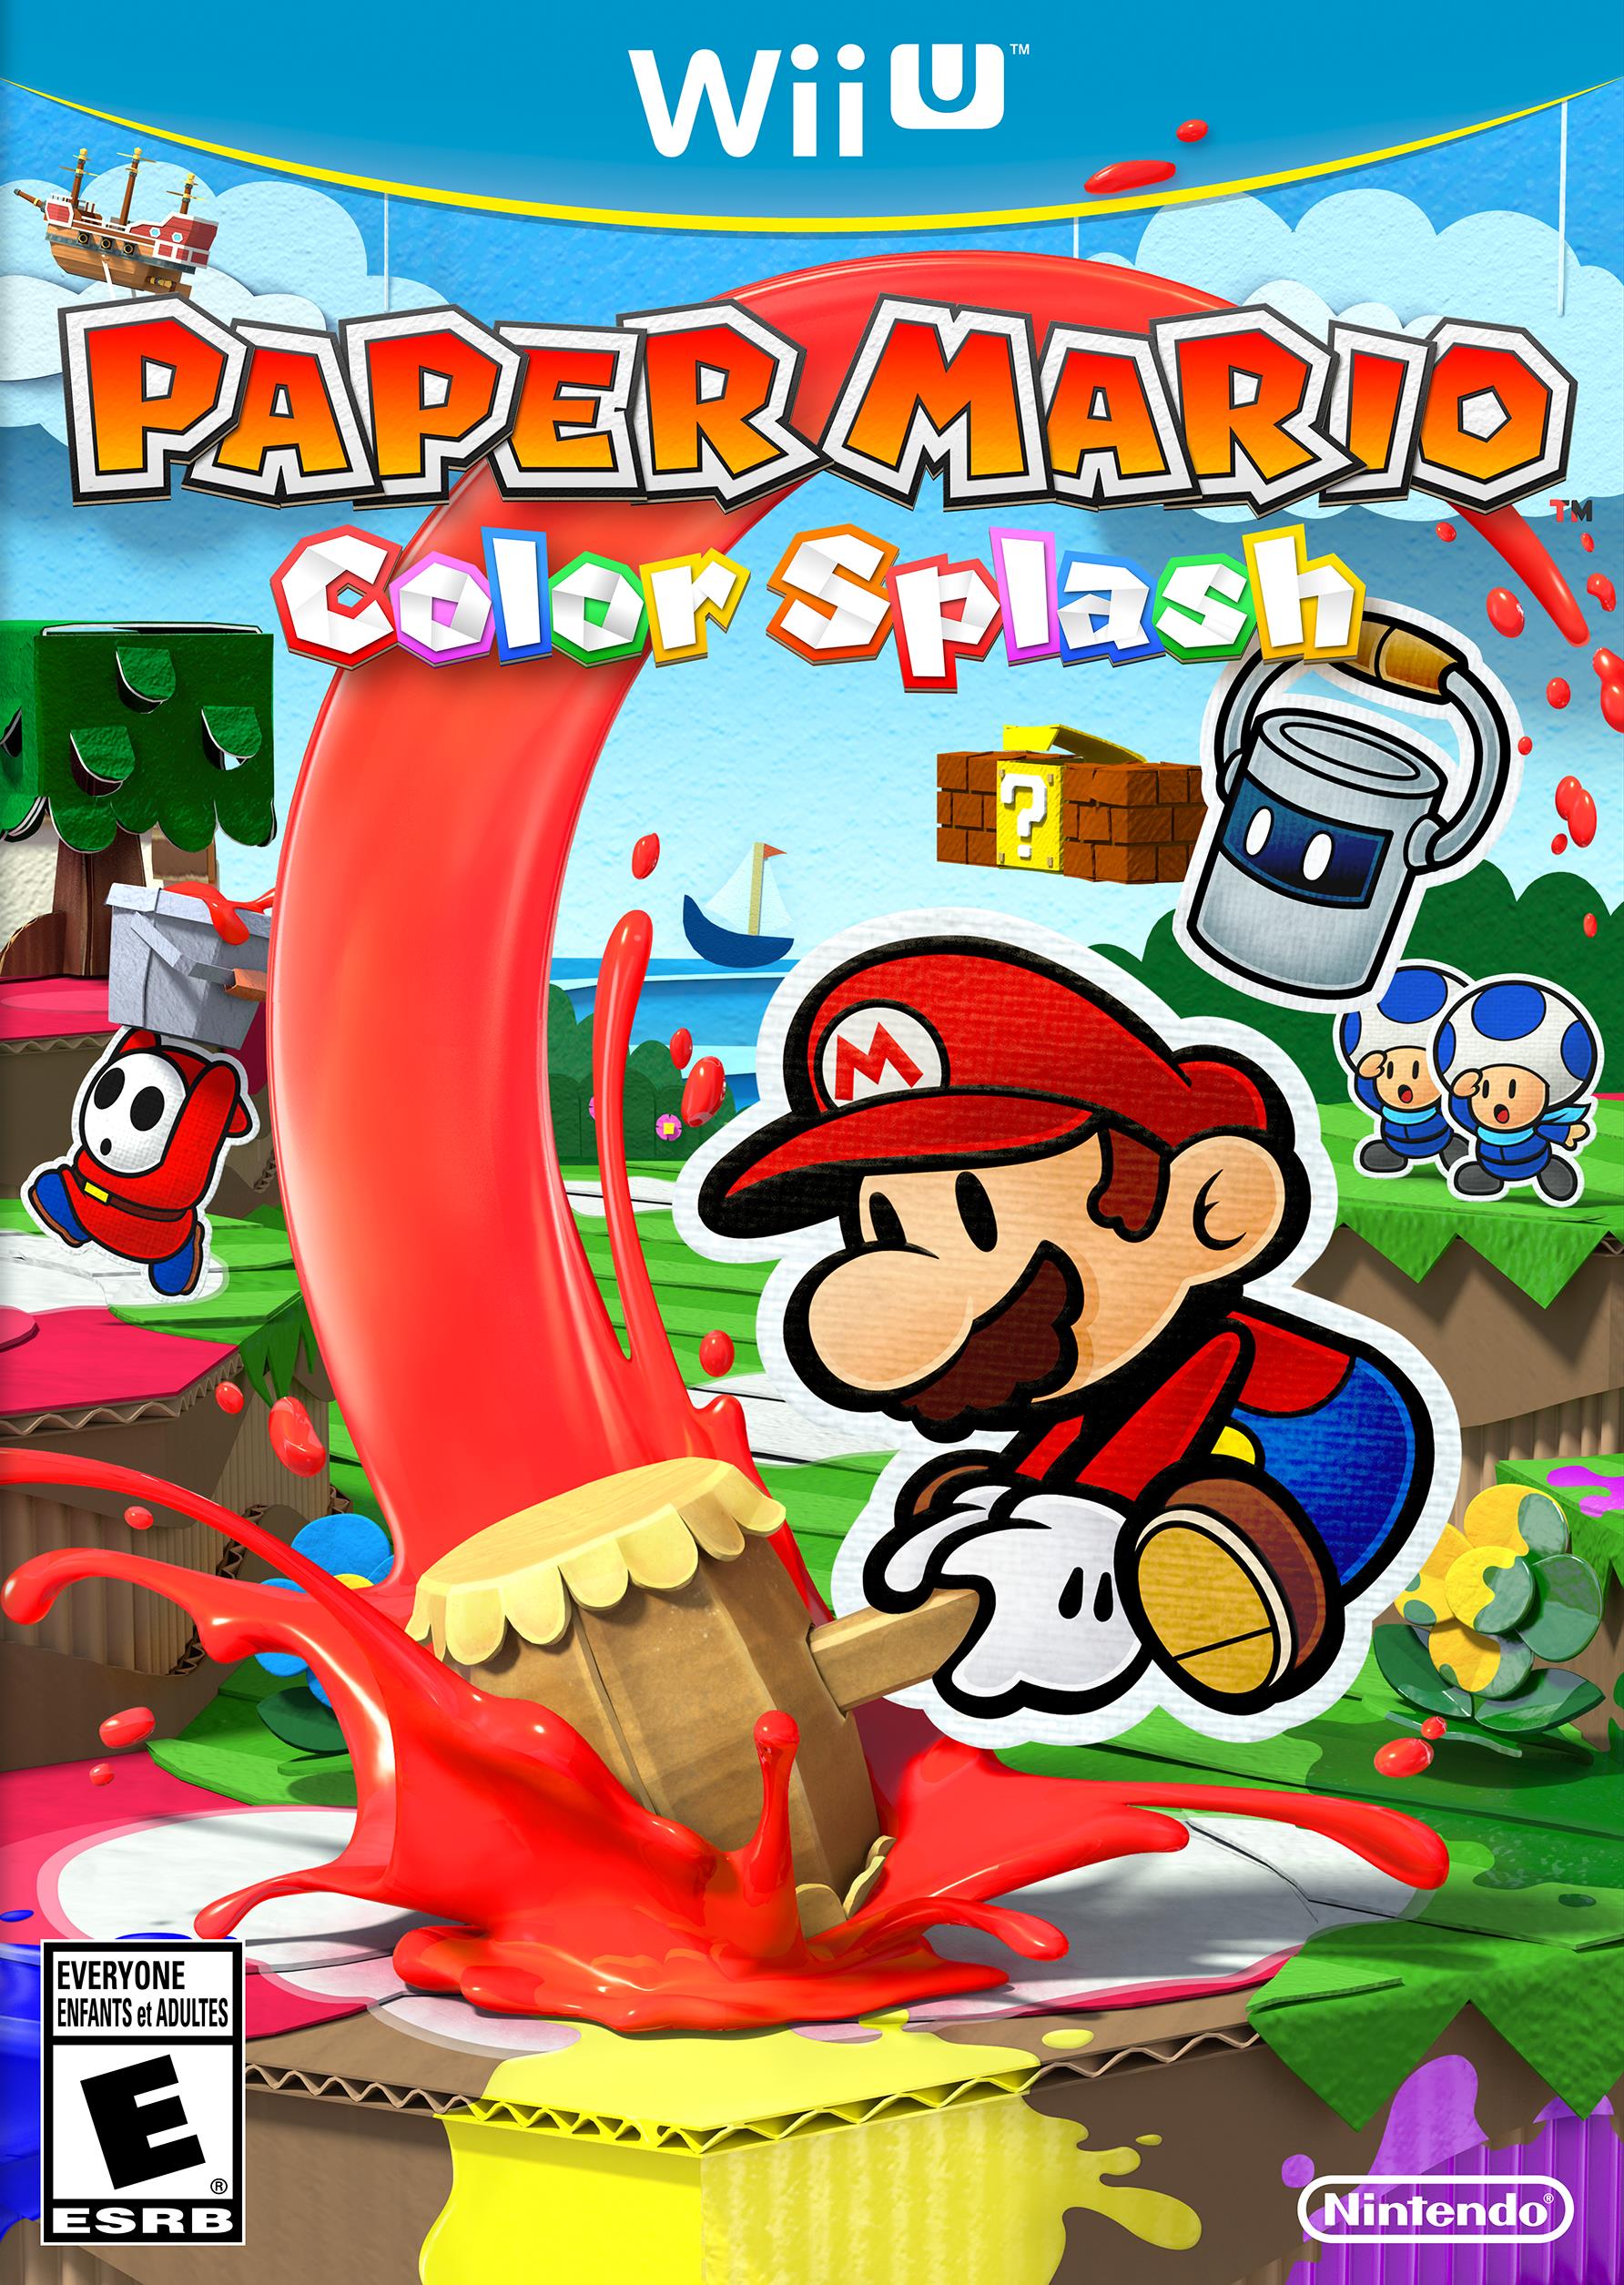 Paper Mario Color Splash, Nintendo, Nintendo Wii U, 045496904326 - image 1 of 22